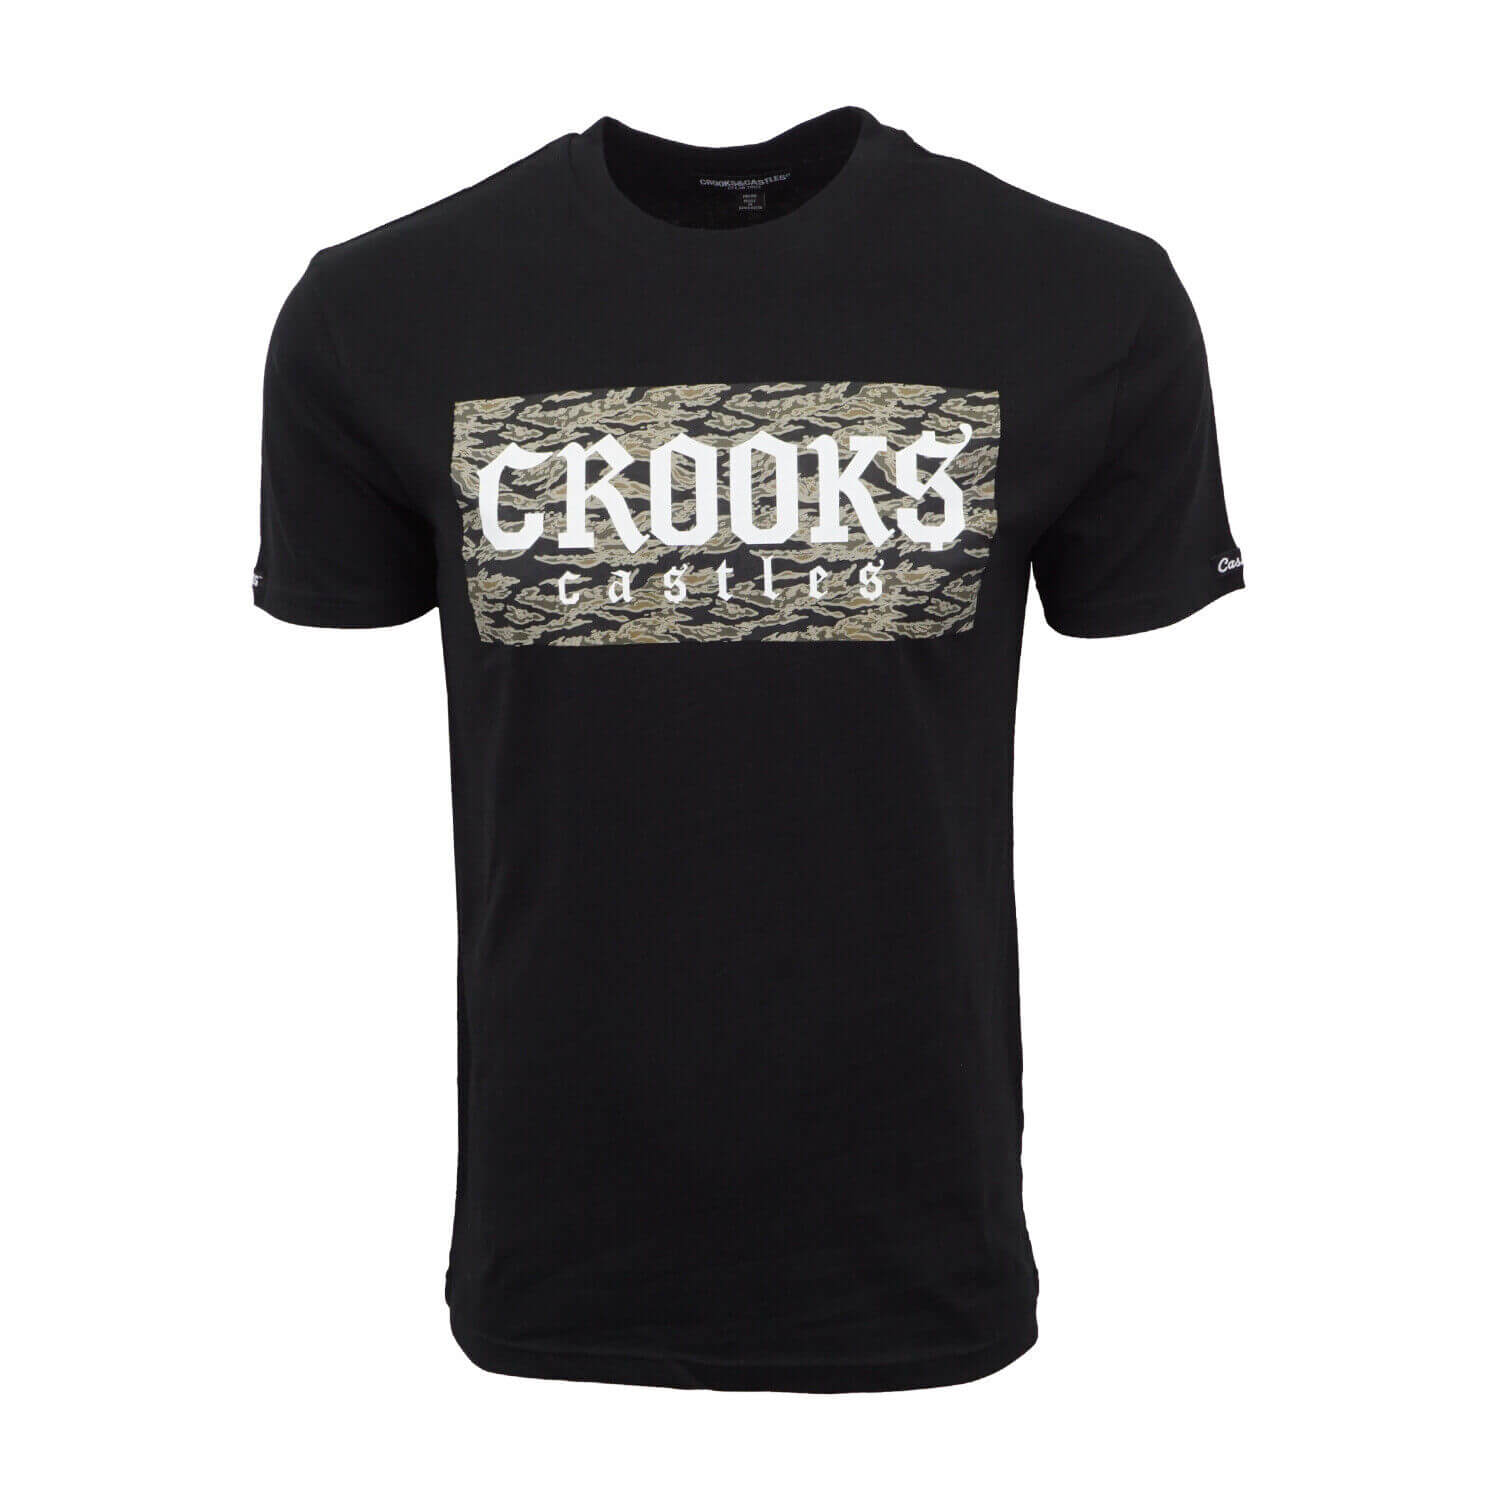 Crooks & Castle Gothic Box T shirt